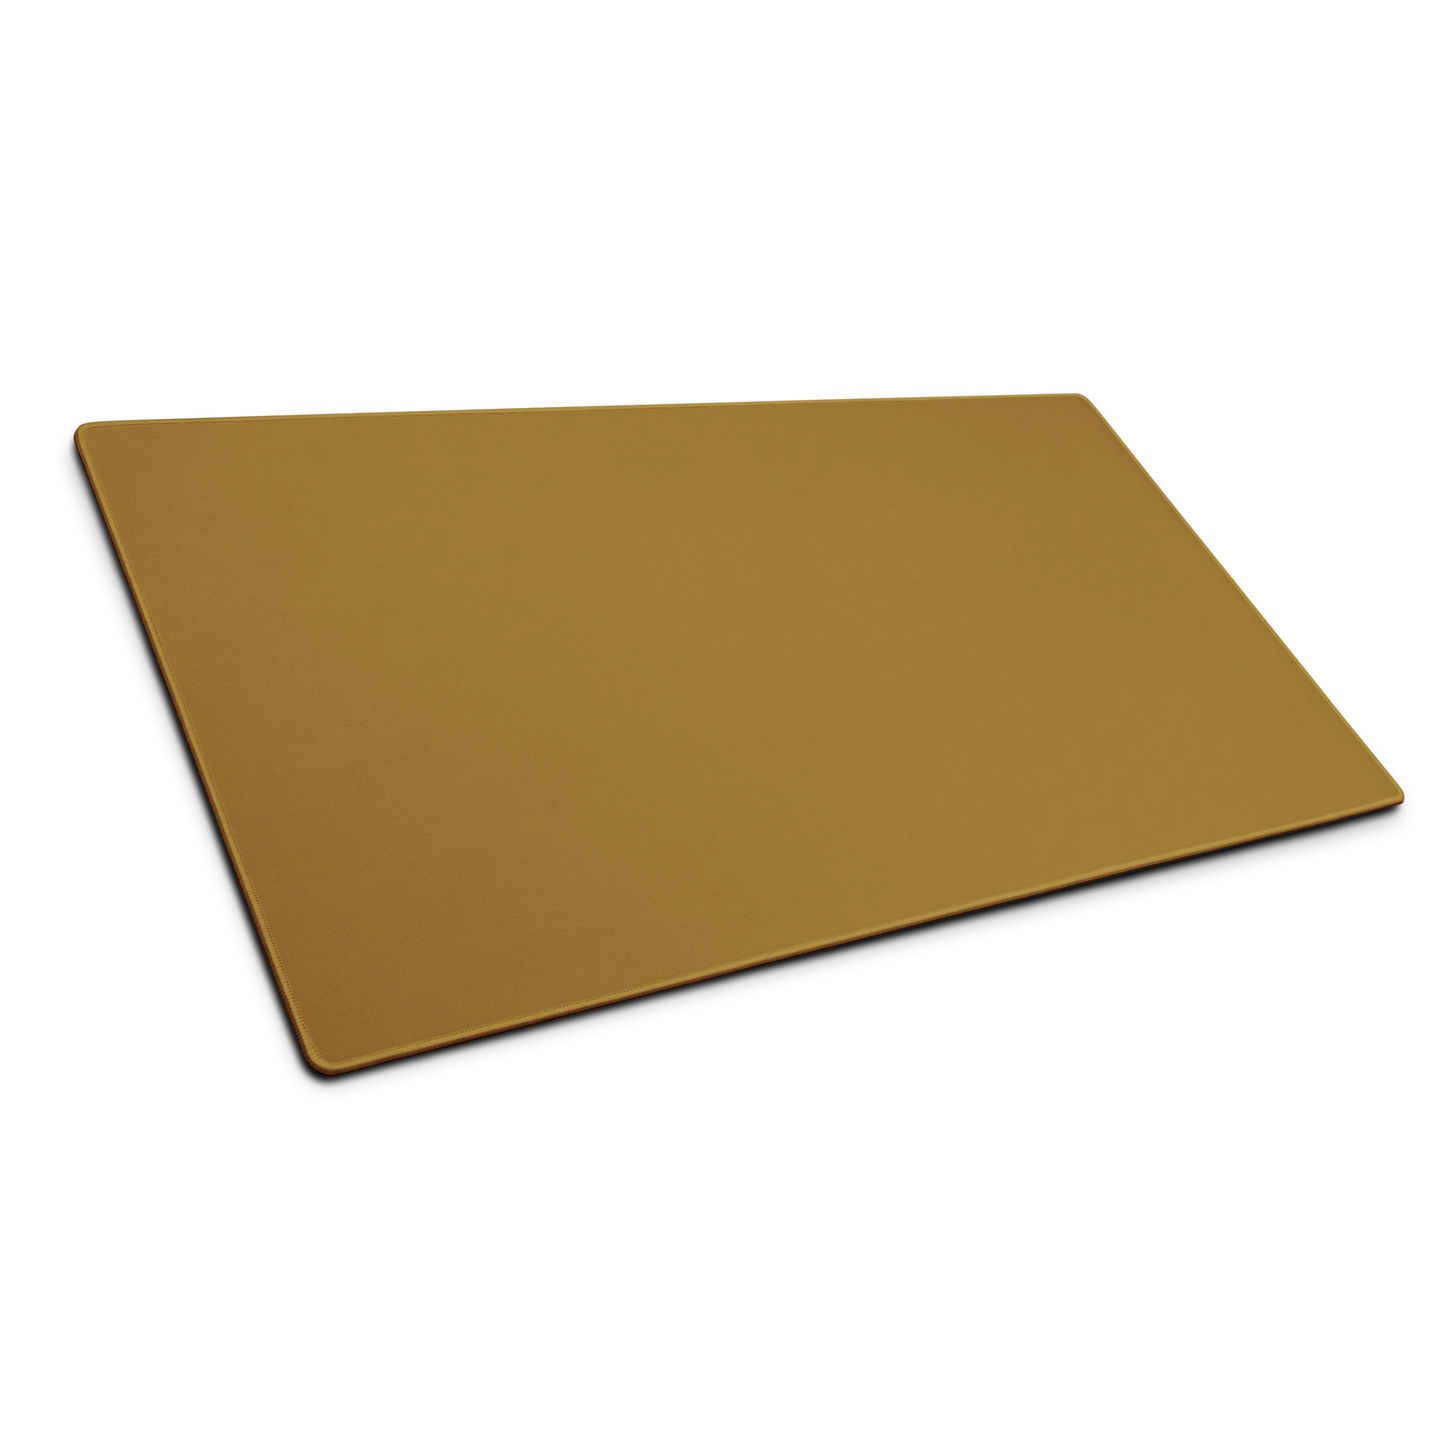 Yellow Desk Pad -  Pantone 118